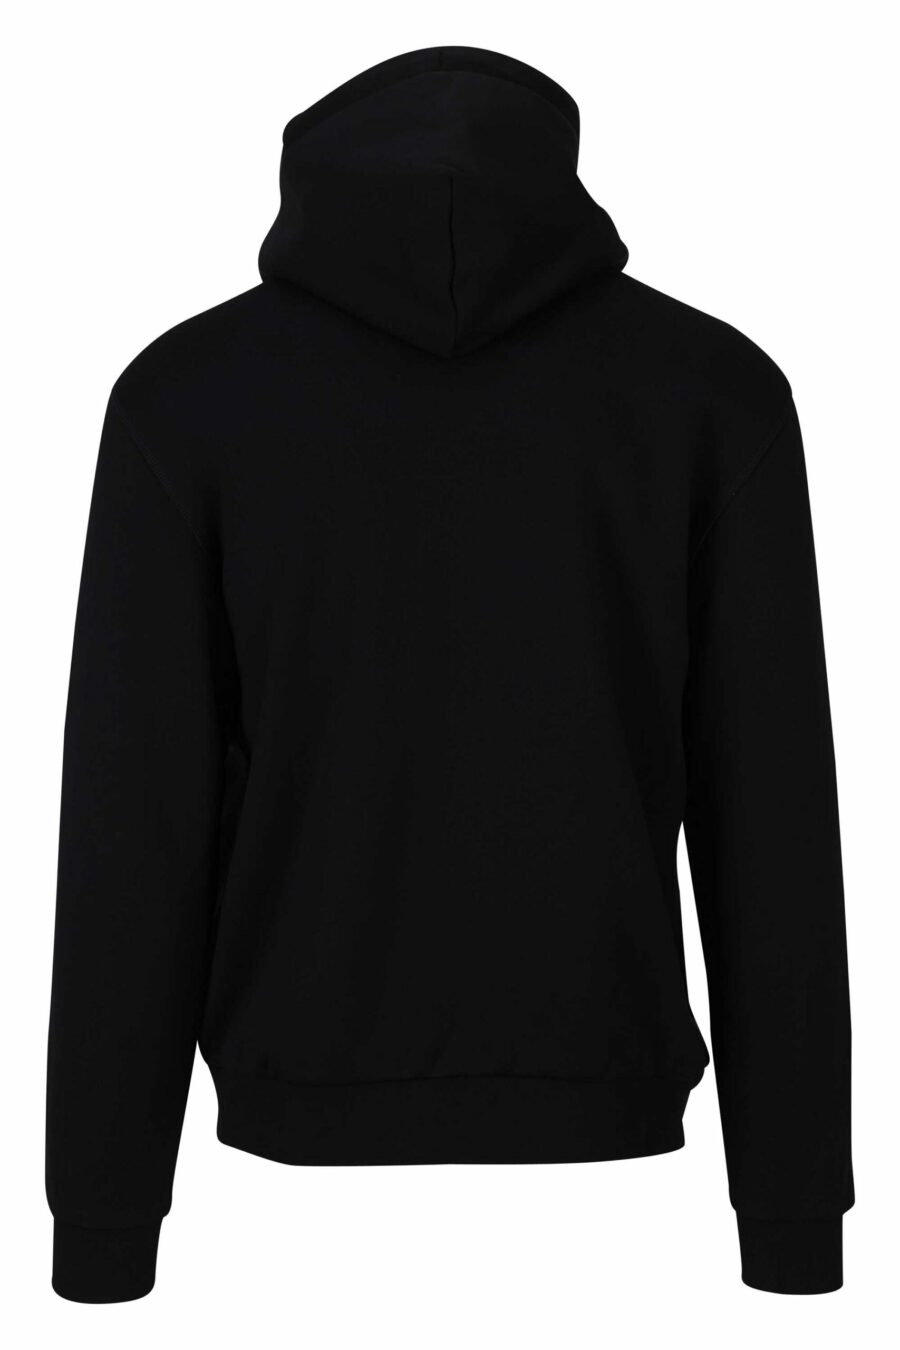 Schwarzes Kapuzensweatshirt mit Reißverschluss und Minilogue-Label "lux identity" - 8056787945869 1 1 skaliert